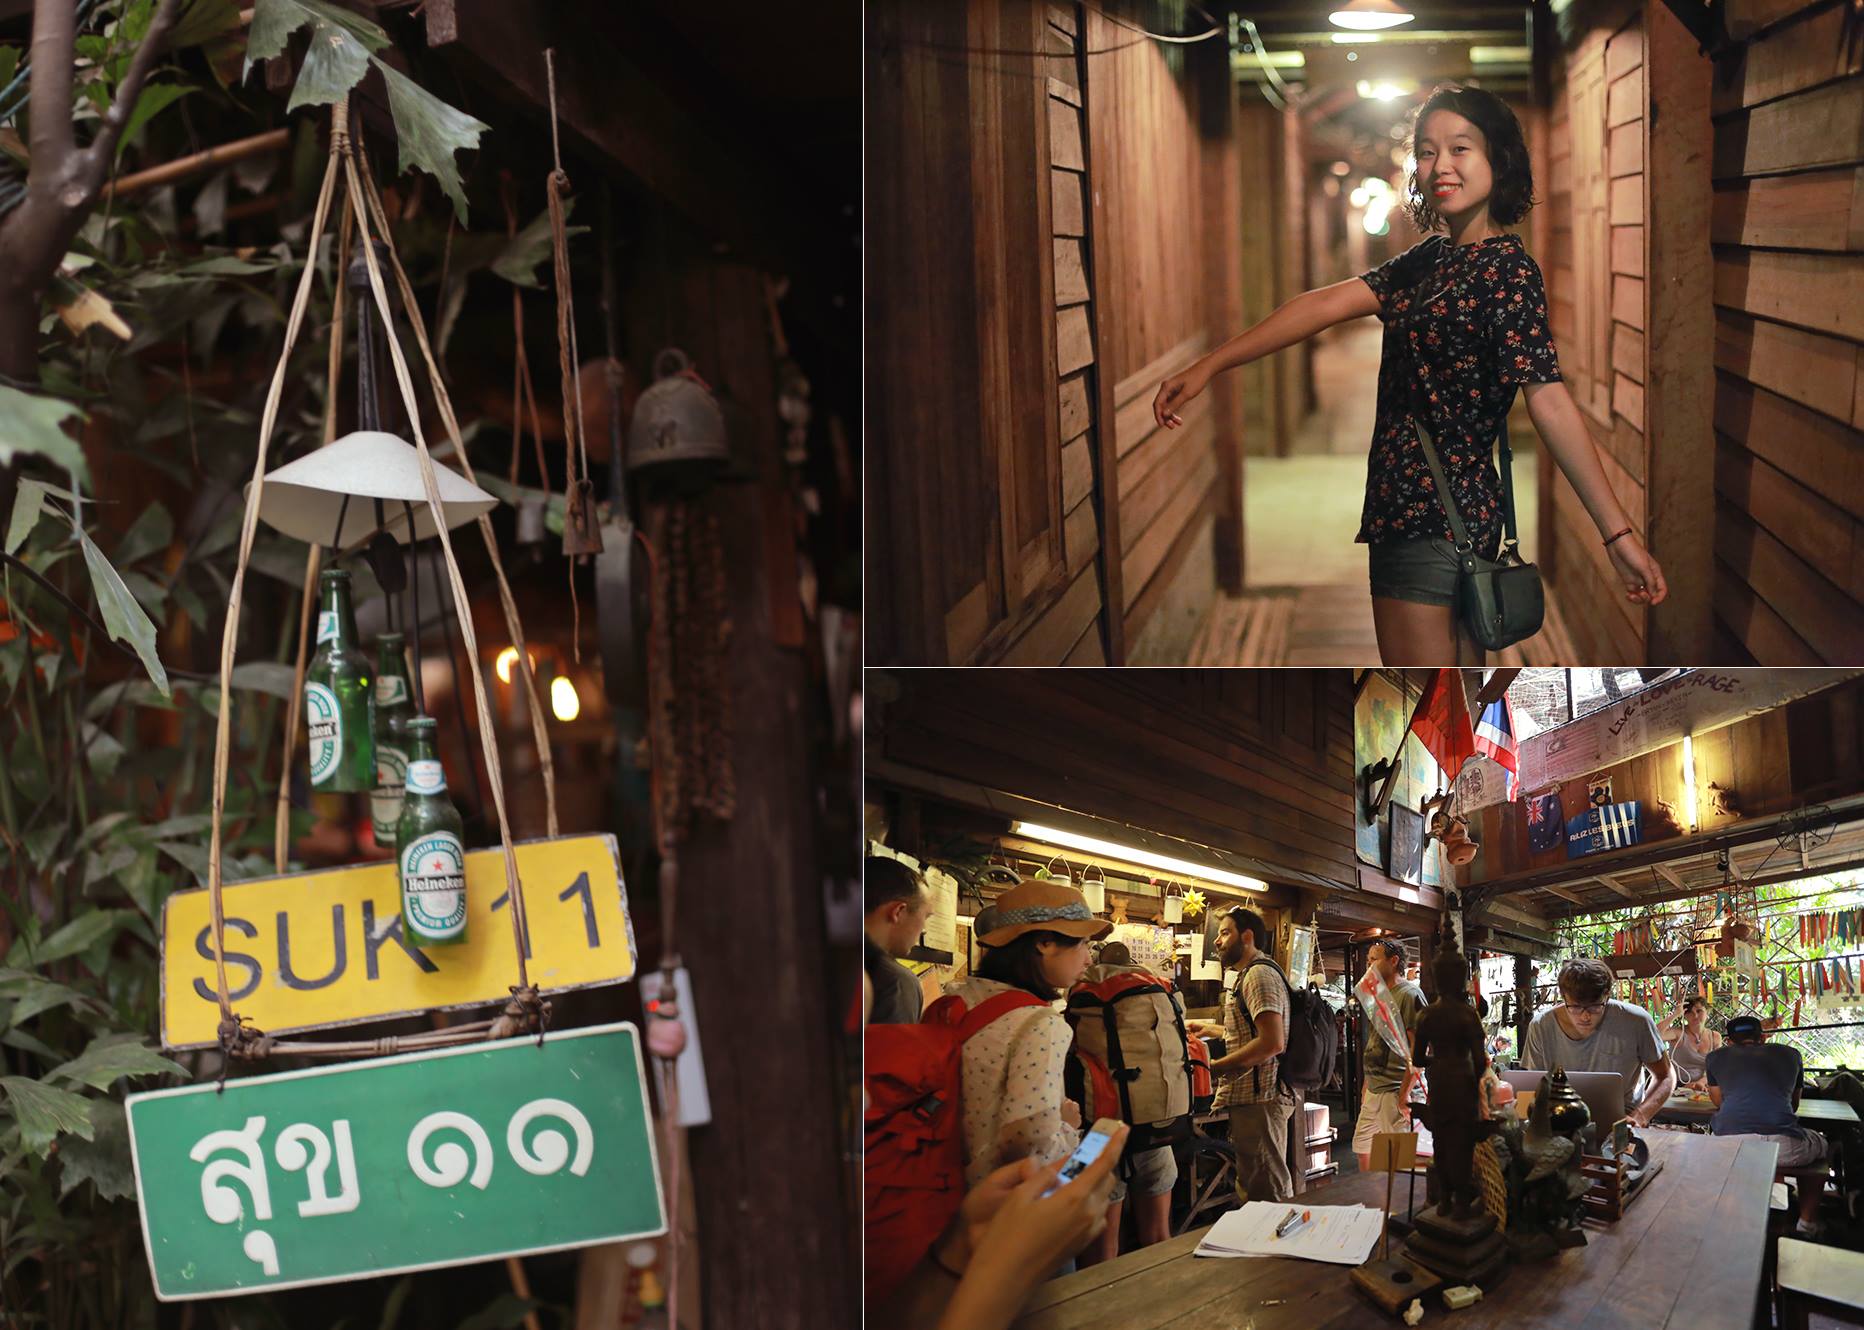 Suk11, Bangkok – hostel cải tạo lại từ một khu nhà tập thể kiểu cũ